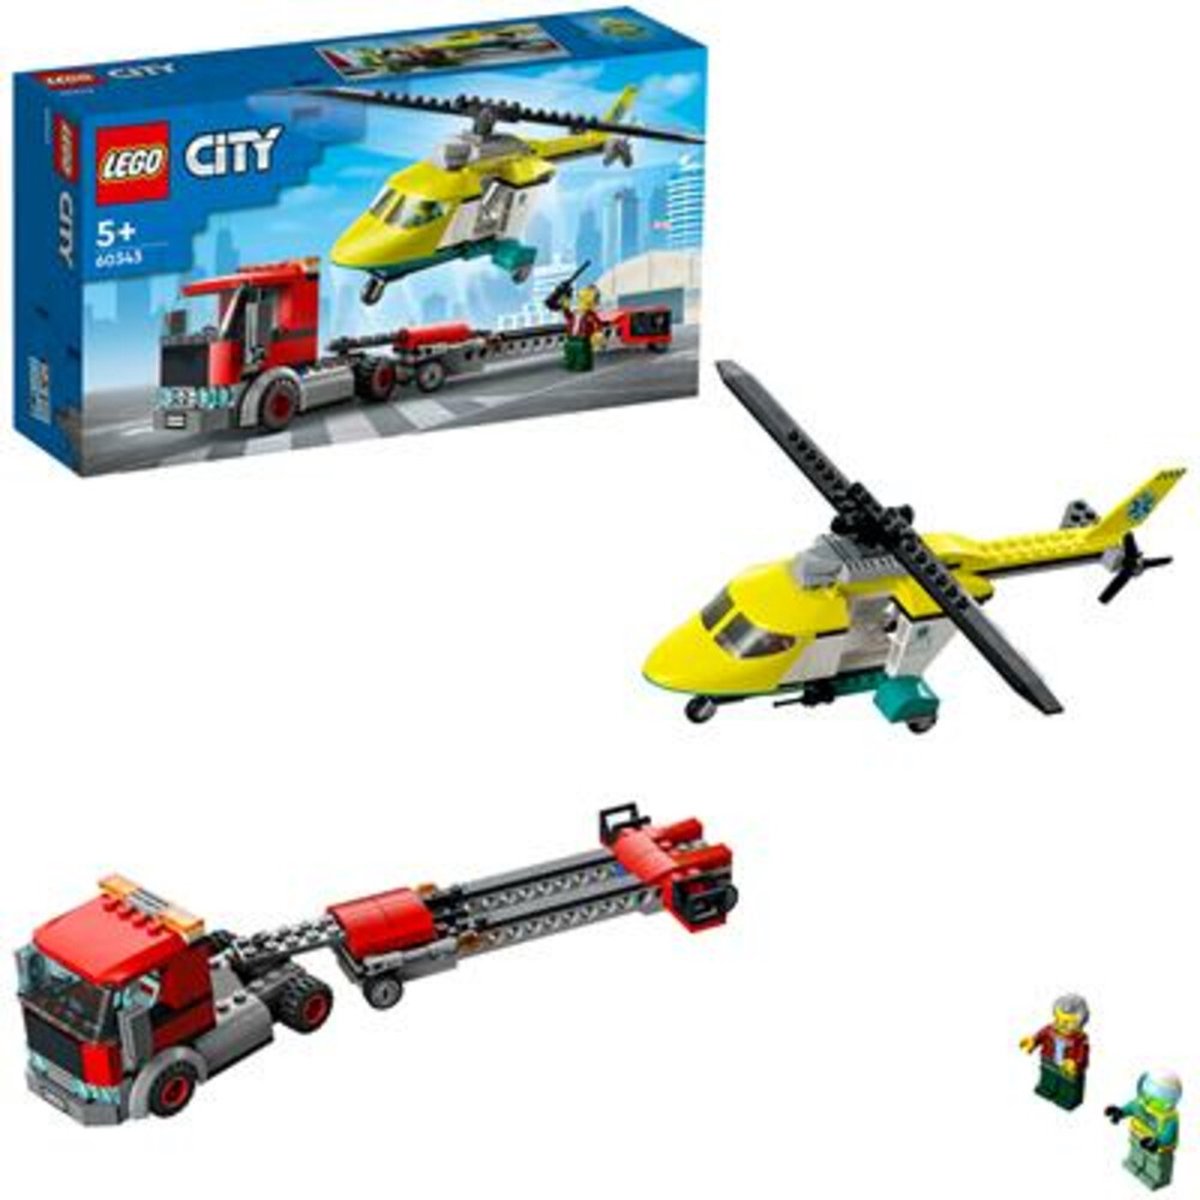 Het koud krijgen Uiterlijk Onveilig LEGO City Reddingshelikopter Transport - 60343 | bol.com